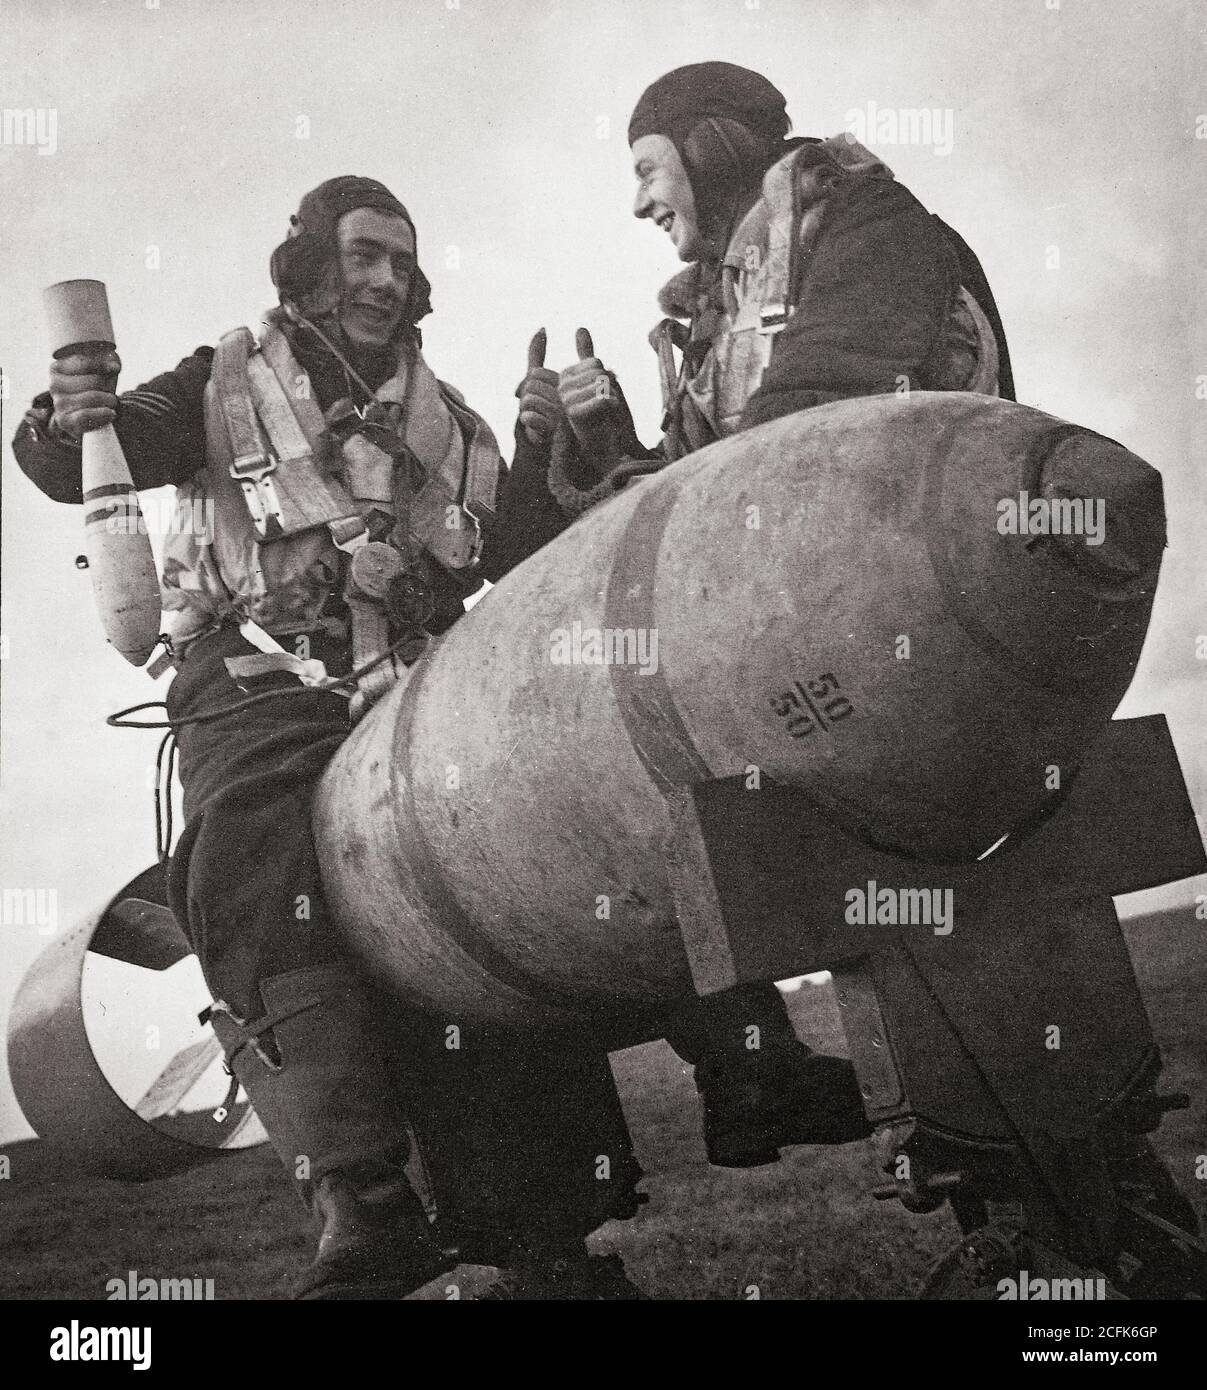 Un pilote est assis sur une bombe à usage général de 1,000 kg, la plus grande disponible en 1941, en train de jouer avec une bombe d'entraînement de 11 kg et demi, tout en discutant avec d'autres membres de l'équipage Banque D'Images